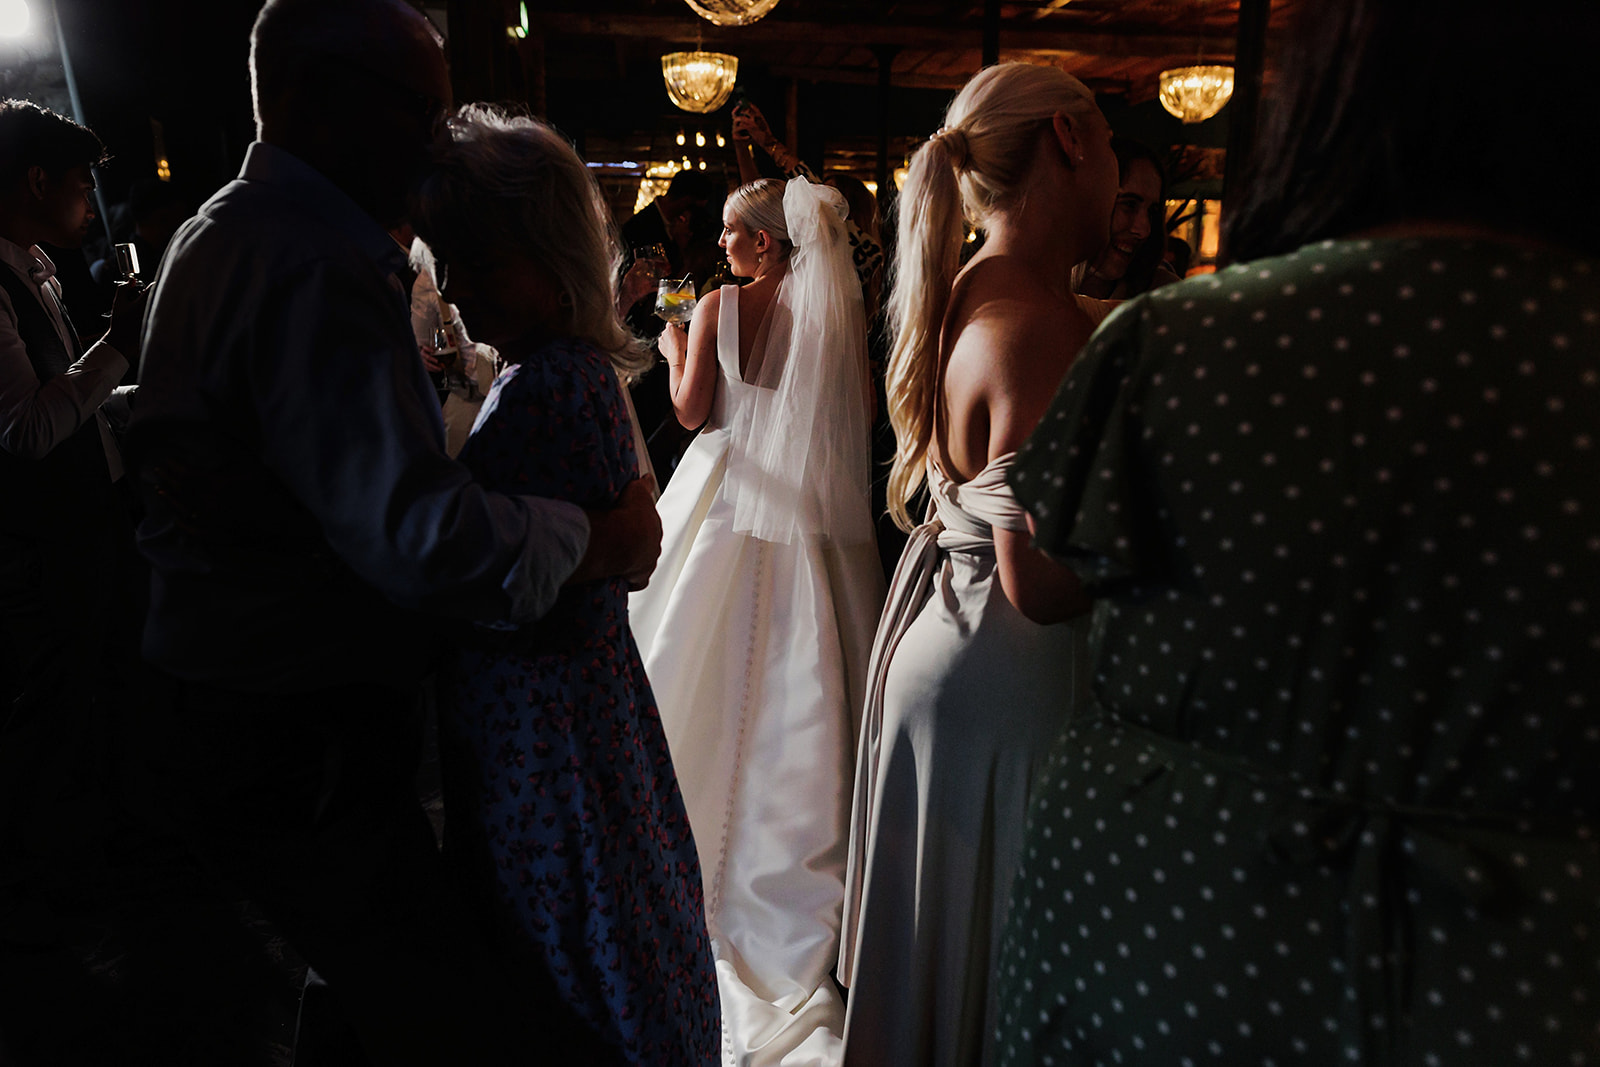 dance, short veil wedding dress